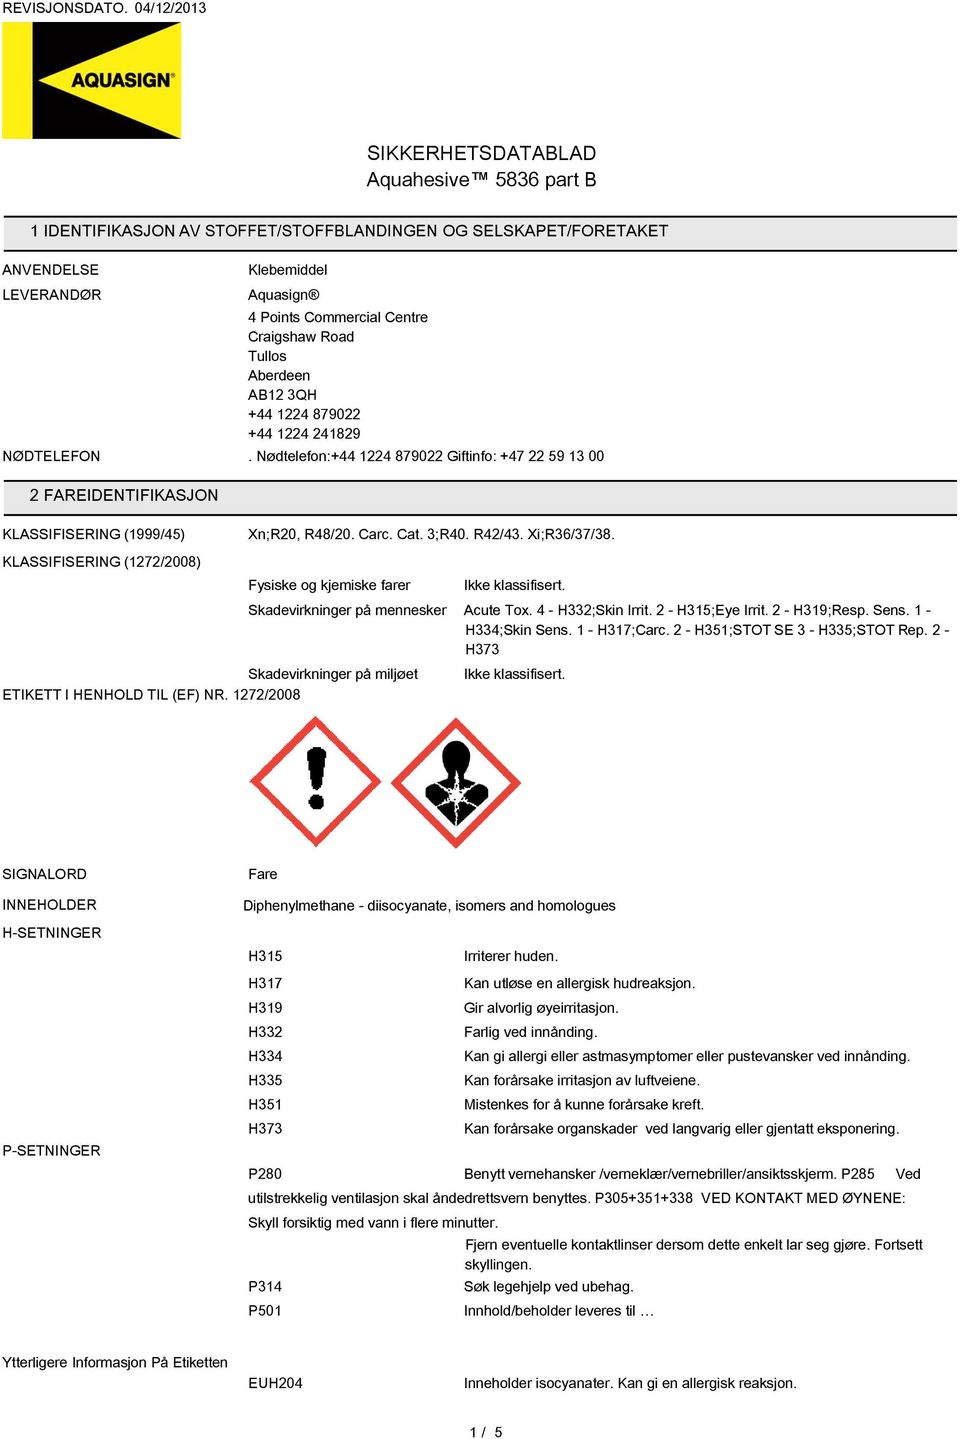 KLASSIFISERING (1272/2008) Fysiske og kjemiske farer Skadevirkninger på miljøet ETIKETT I HENHOLD TIL (EF) NR. 1272/2008 Ikke klassifisert. Skadevirkninger på mennesker Acute Tox. 4 - H332;Skin Irrit.